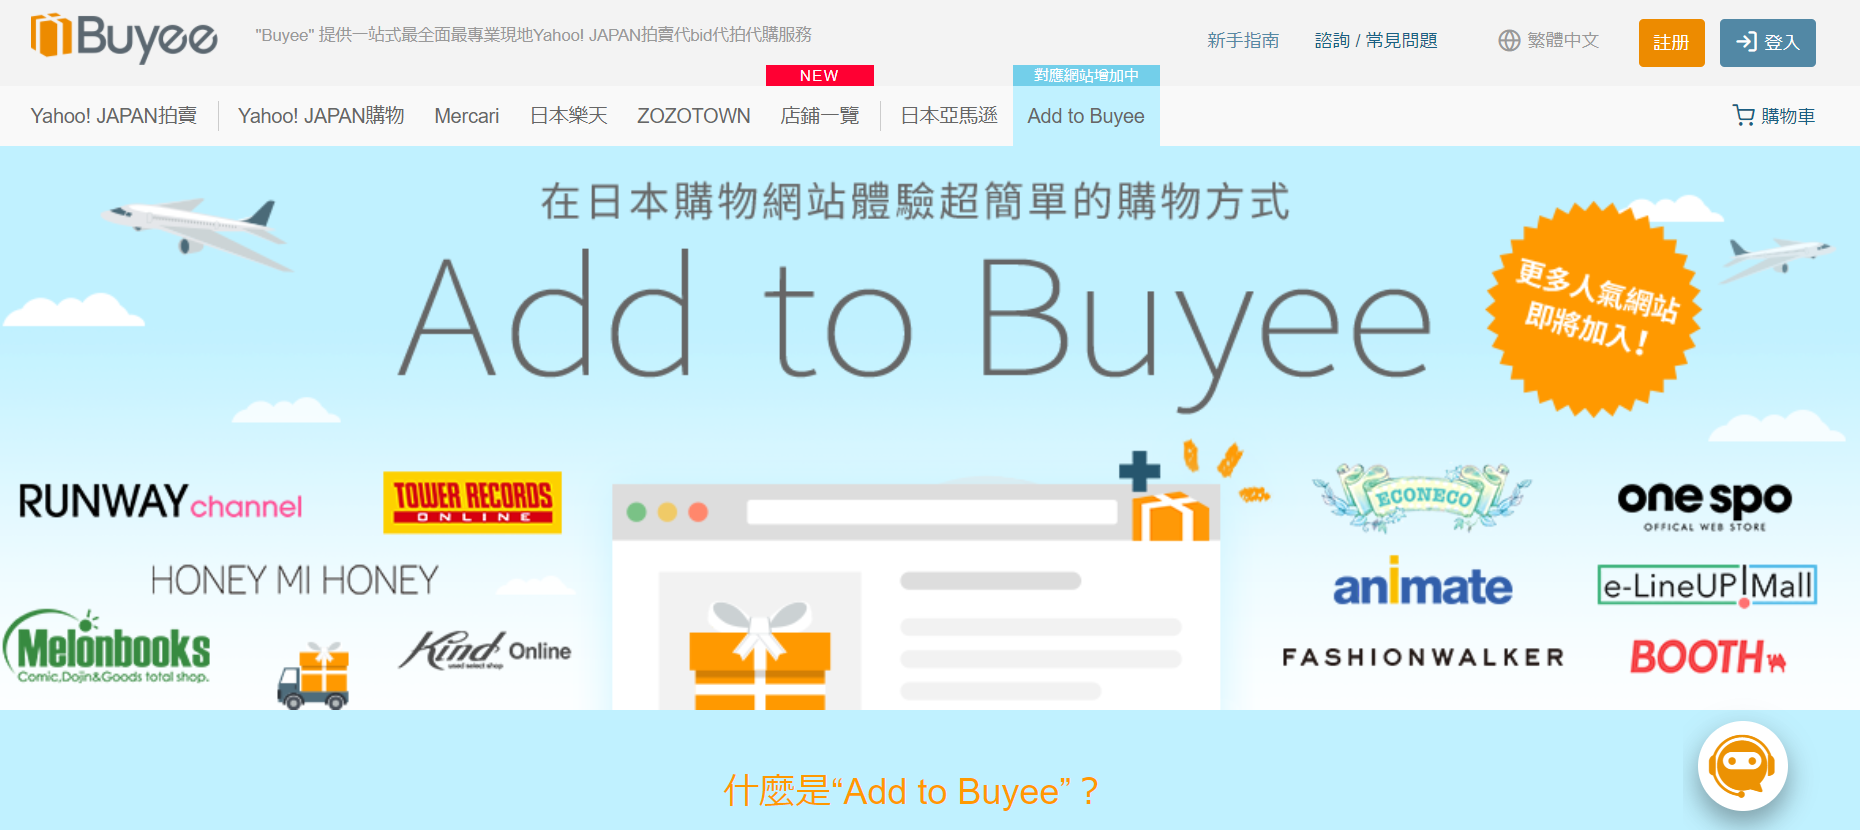 日本代購平台「Buyee」